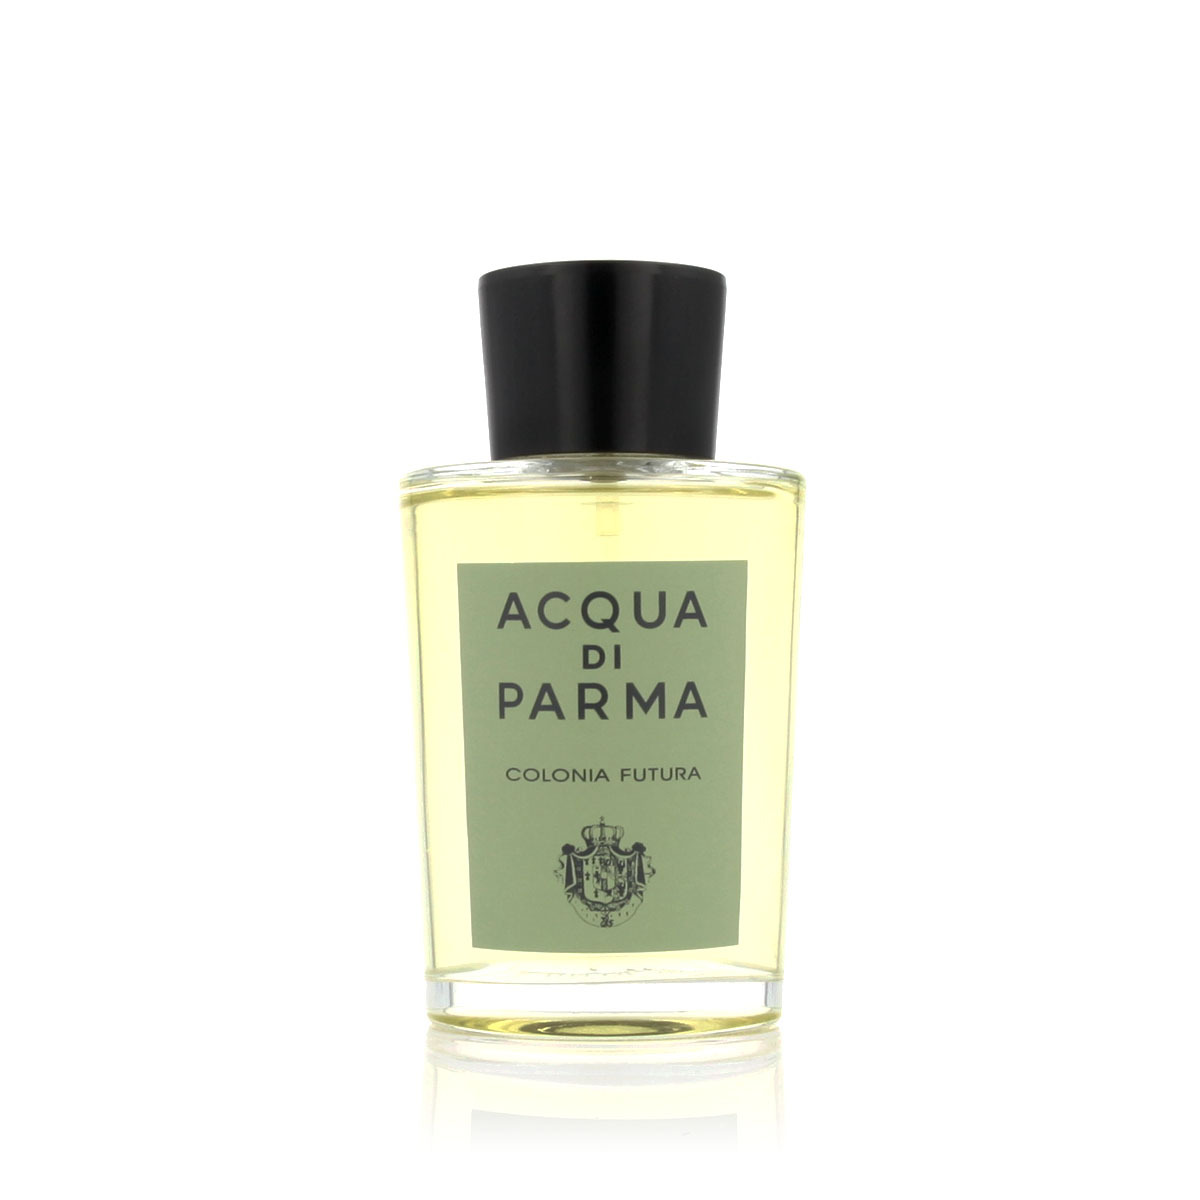 Acqua Di Parma Colonia Futura 5 ml NIŠINIAI kvepalų mėginukas (atomaizeris) Unisex Cologne